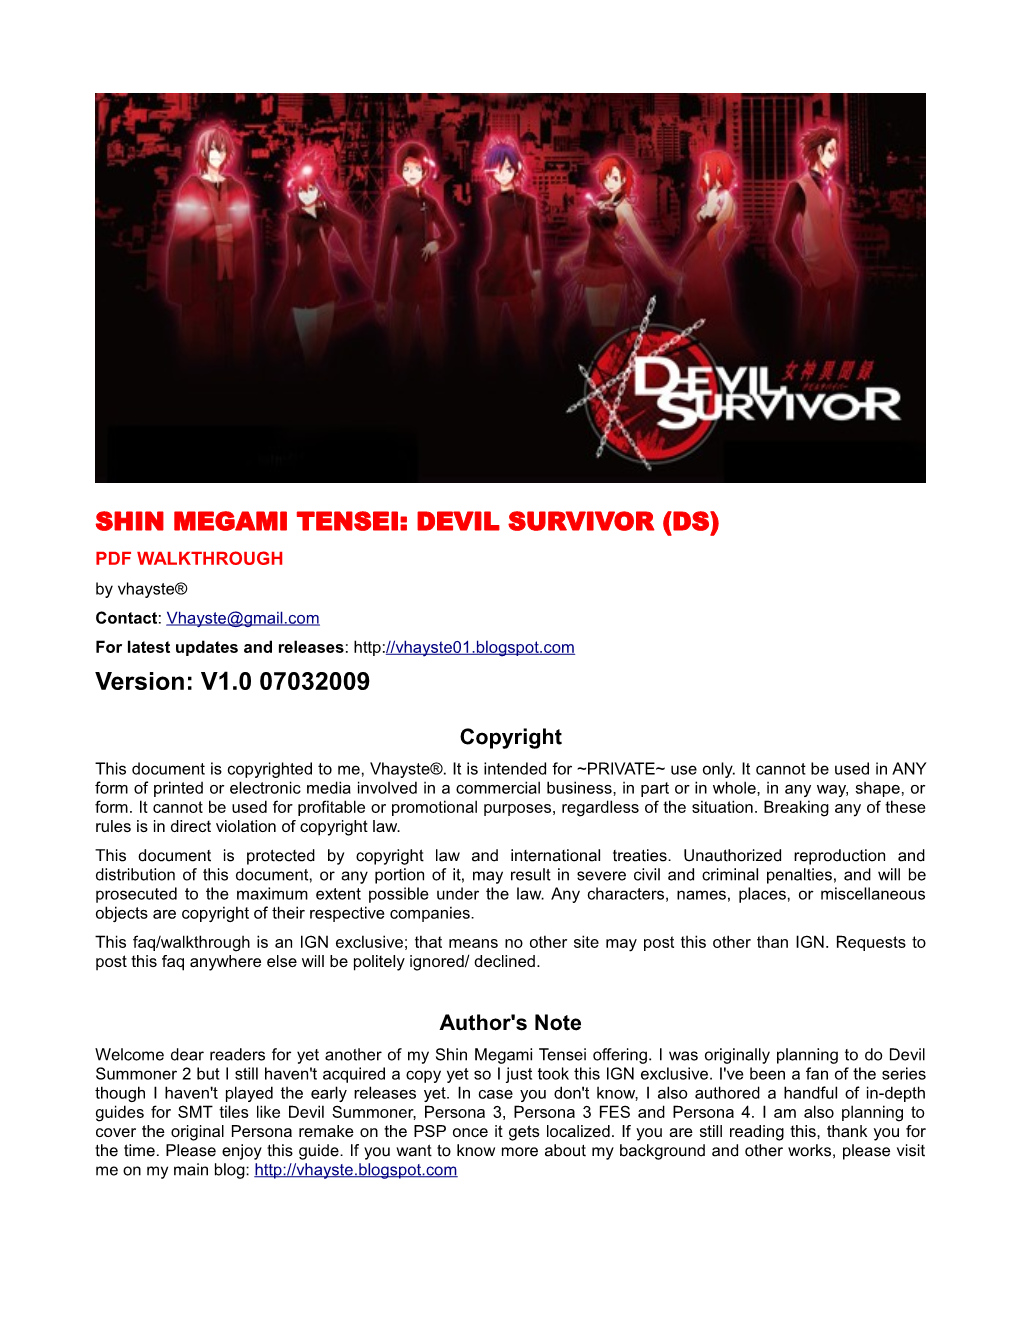 SHIN MEGAMI TENSEI: DEVIL SURVIVOR (DS) Version: V1